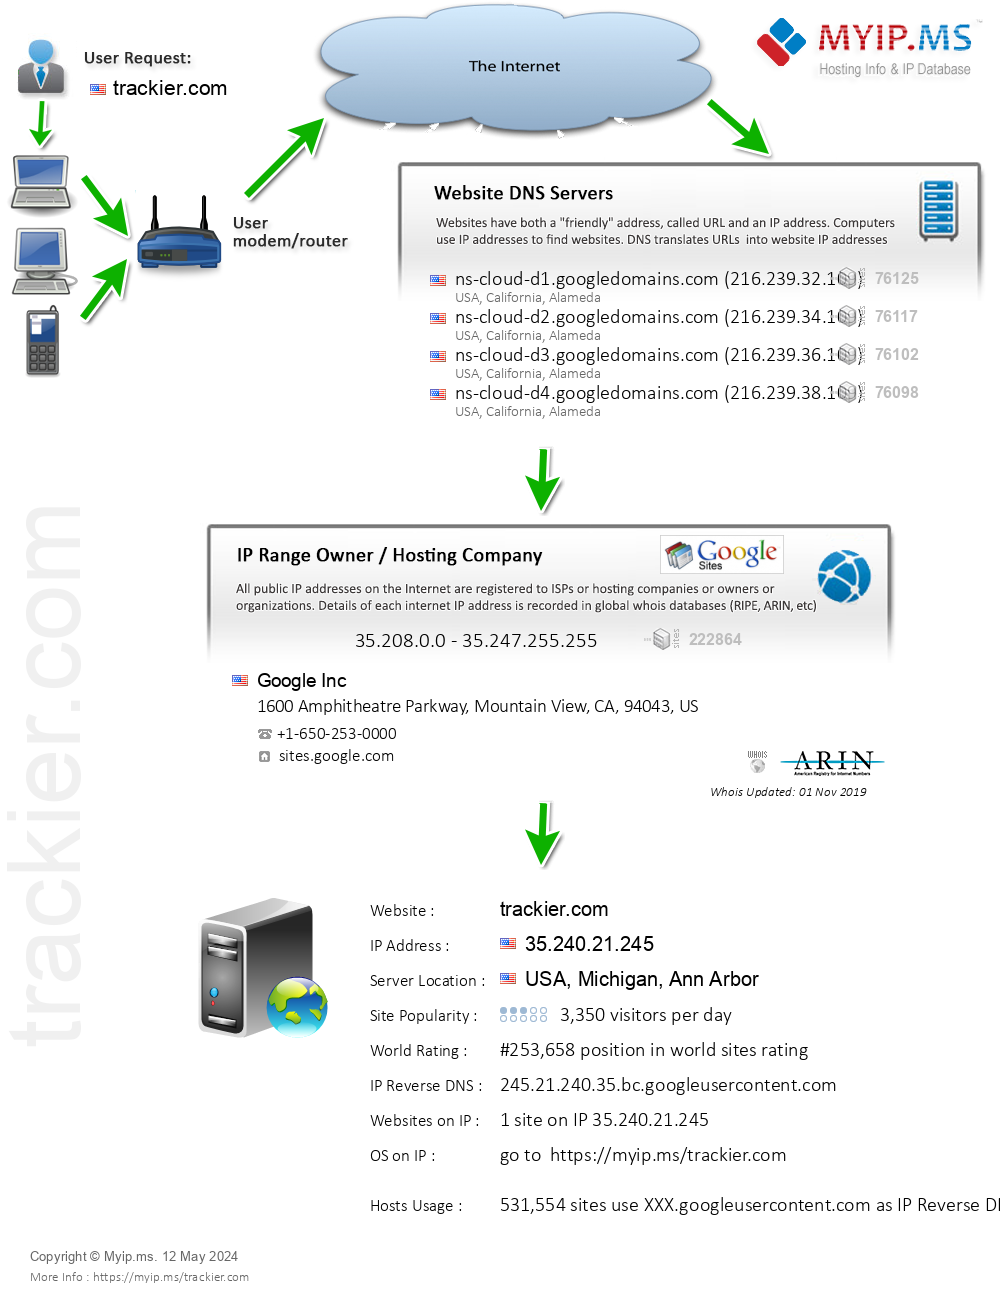 Trackier.com - Website Hosting Visual IP Diagram